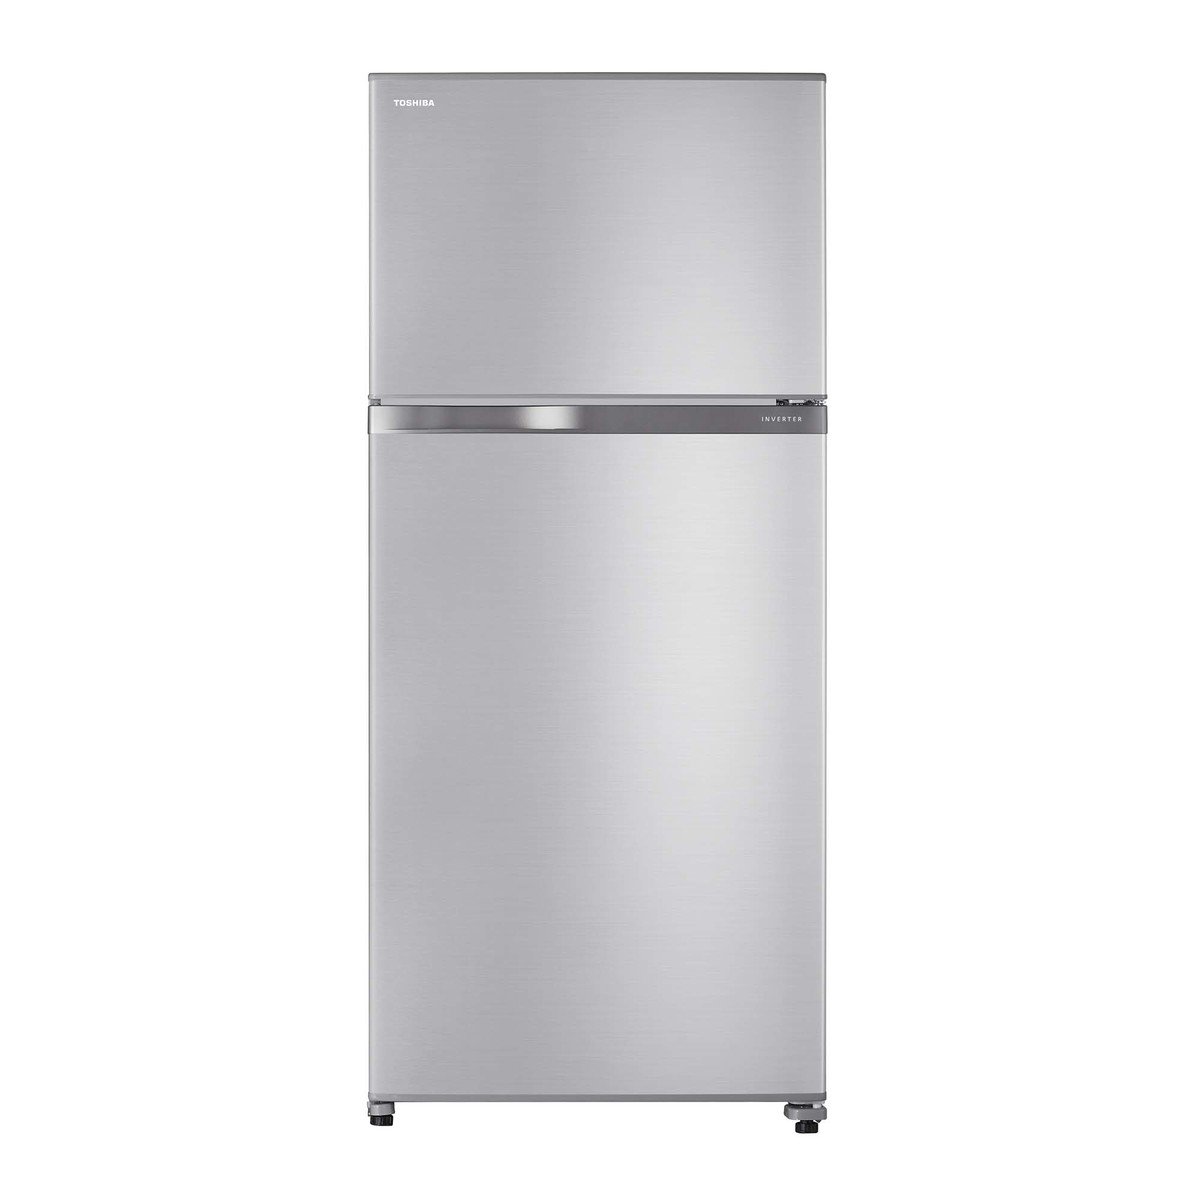 Toshiba Double Door Refrigerator, 608L, Silver, GRA820U-X(S)